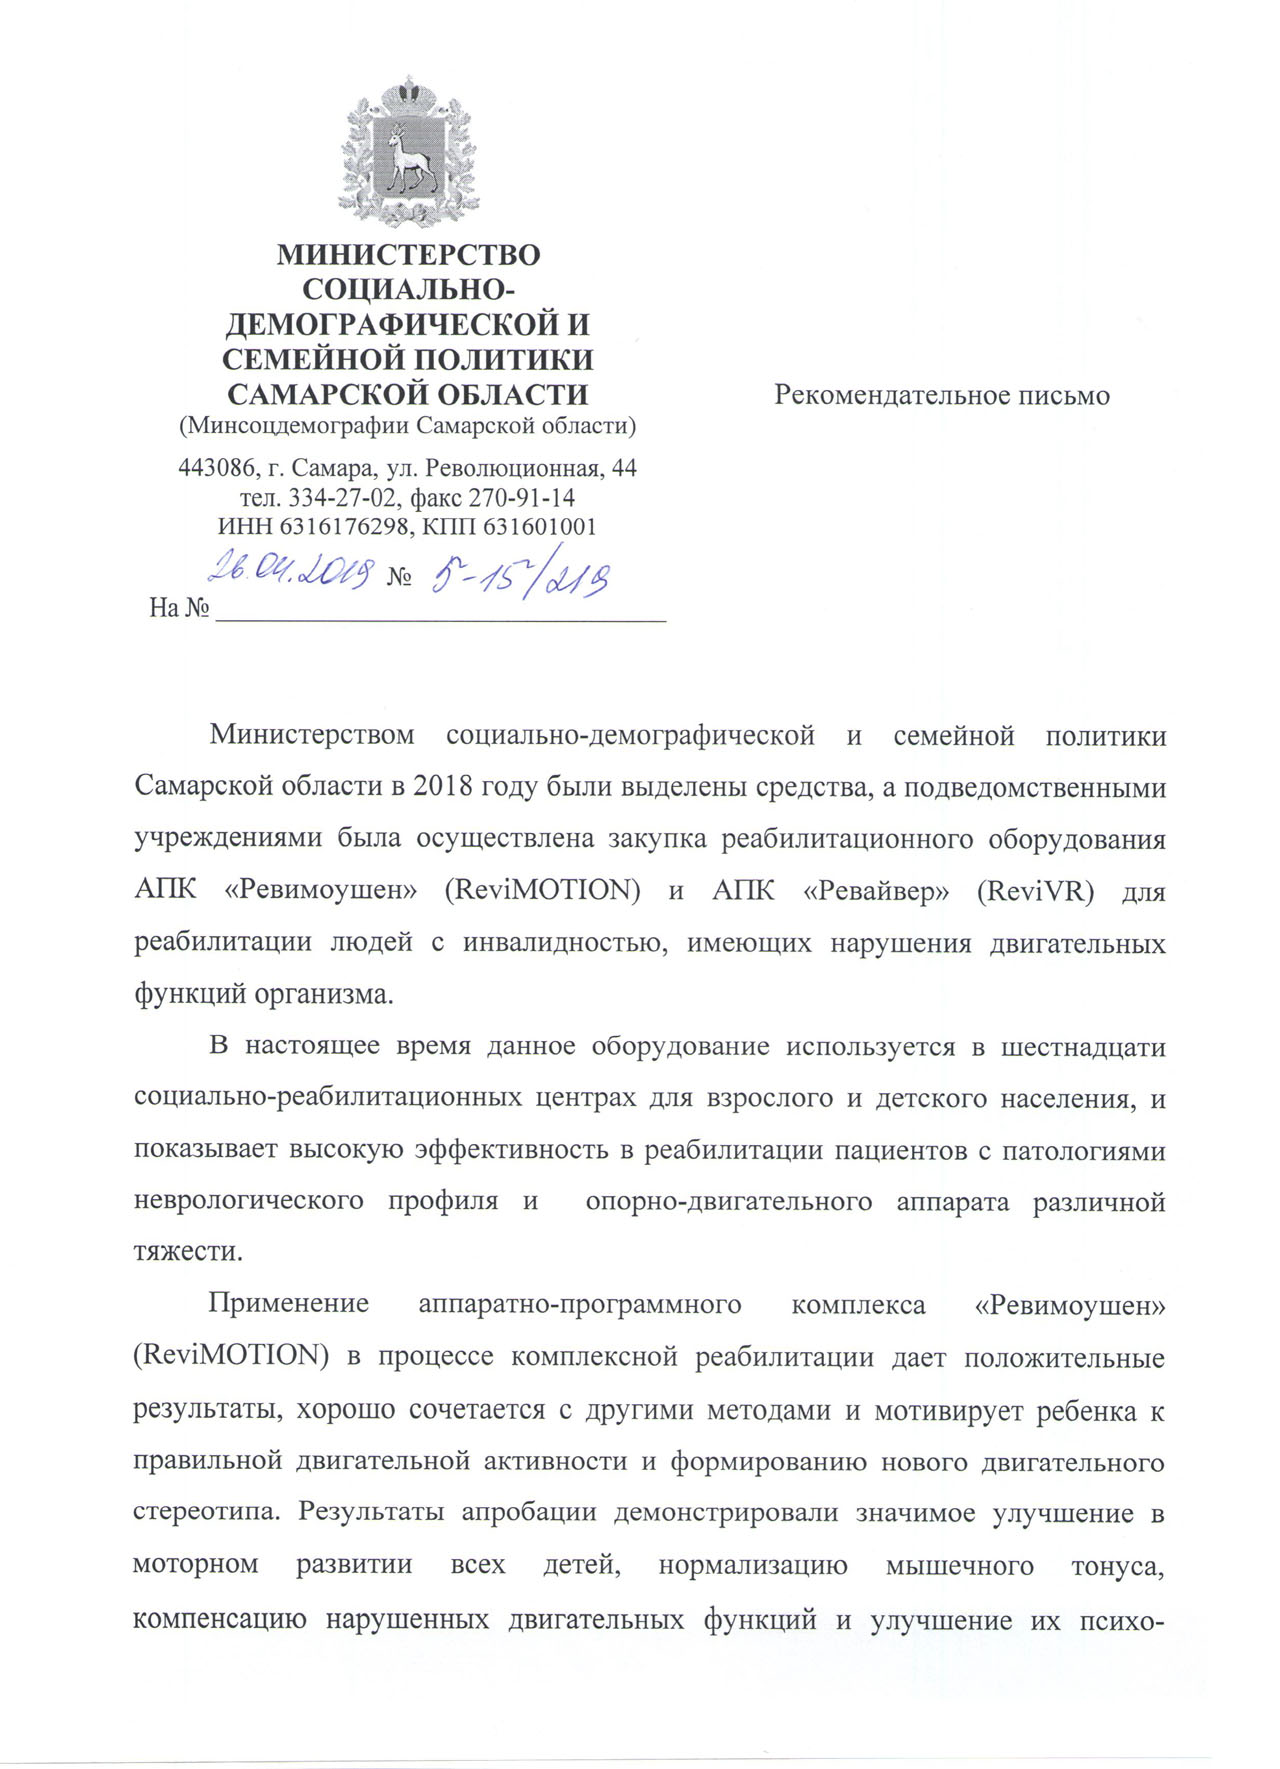 Отзыв о ReviVR от Министерства социально-демографической и семейной политики Самарской области